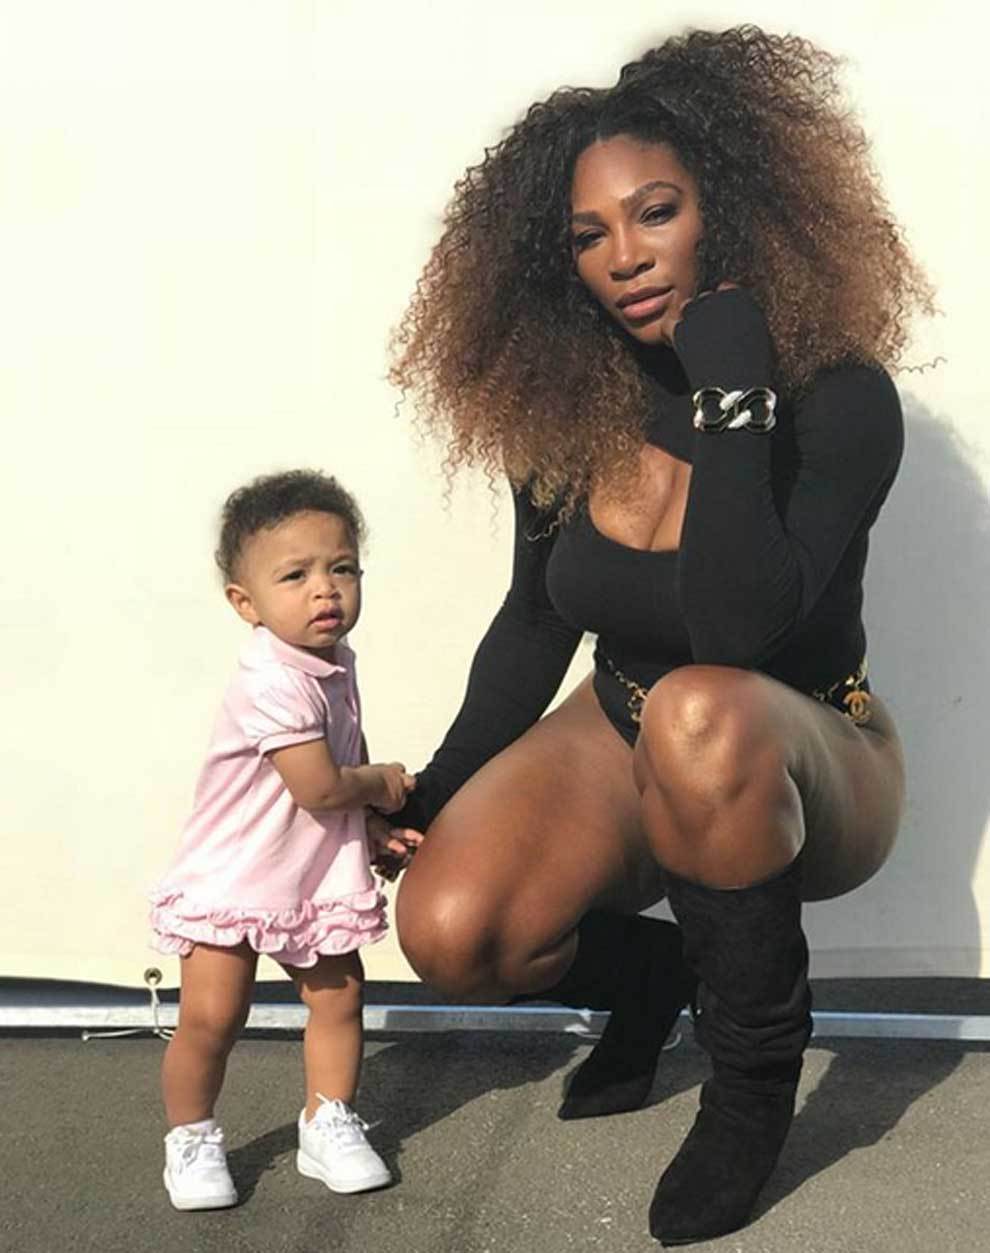 La tenista Serena Williams posando junto a su hija Alexis Olympia...